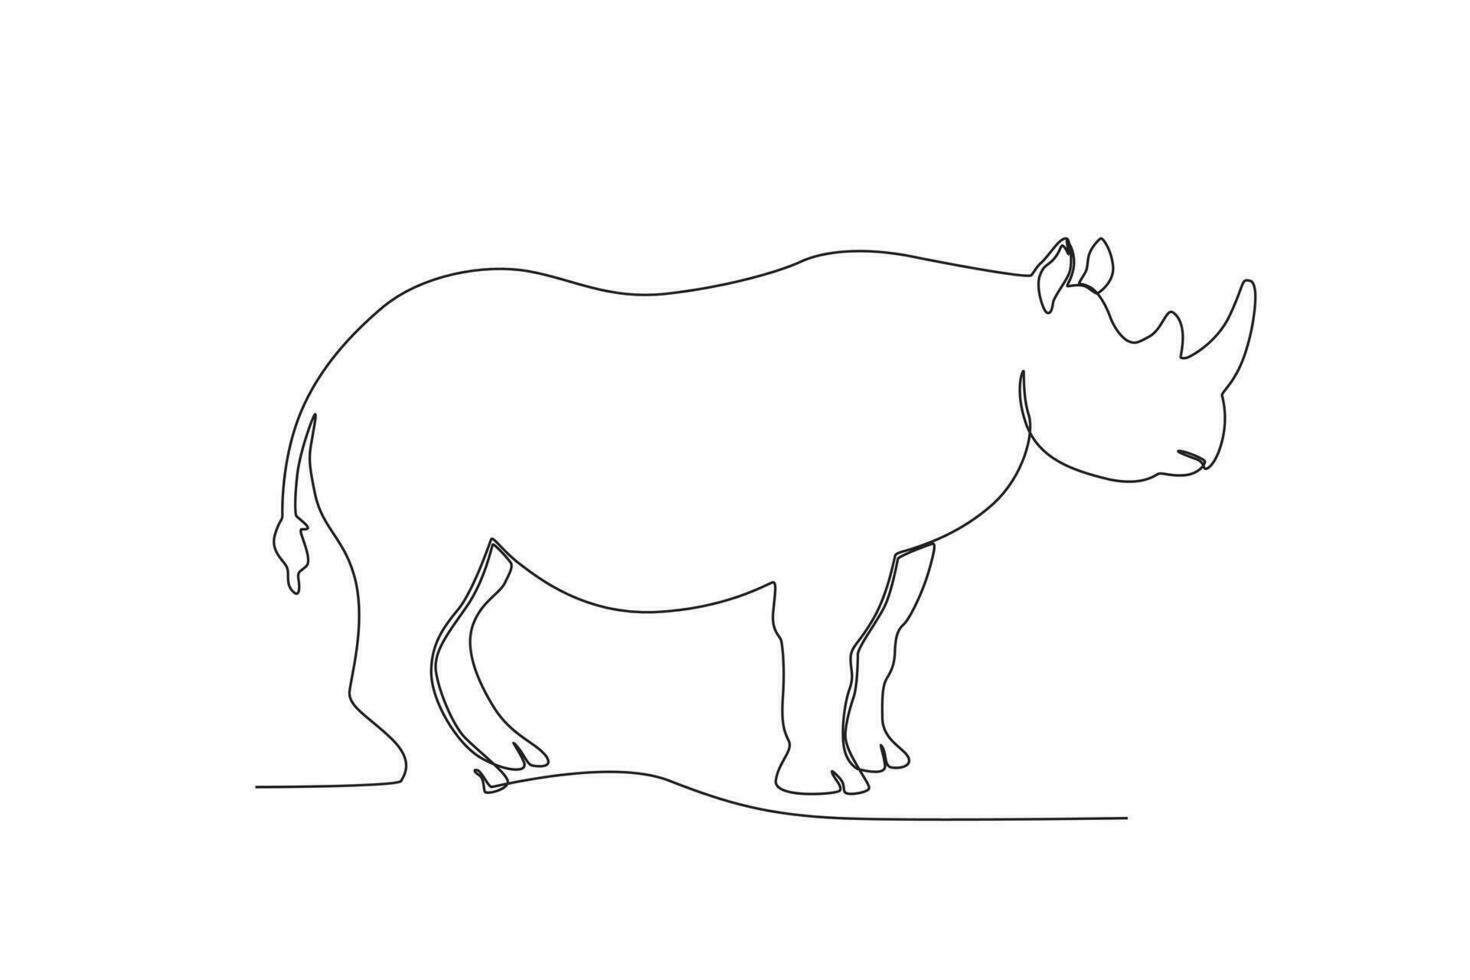 soltero uno línea dibujo de un rinoceronte. continuo línea dibujar diseño gráfico vector ilustración.